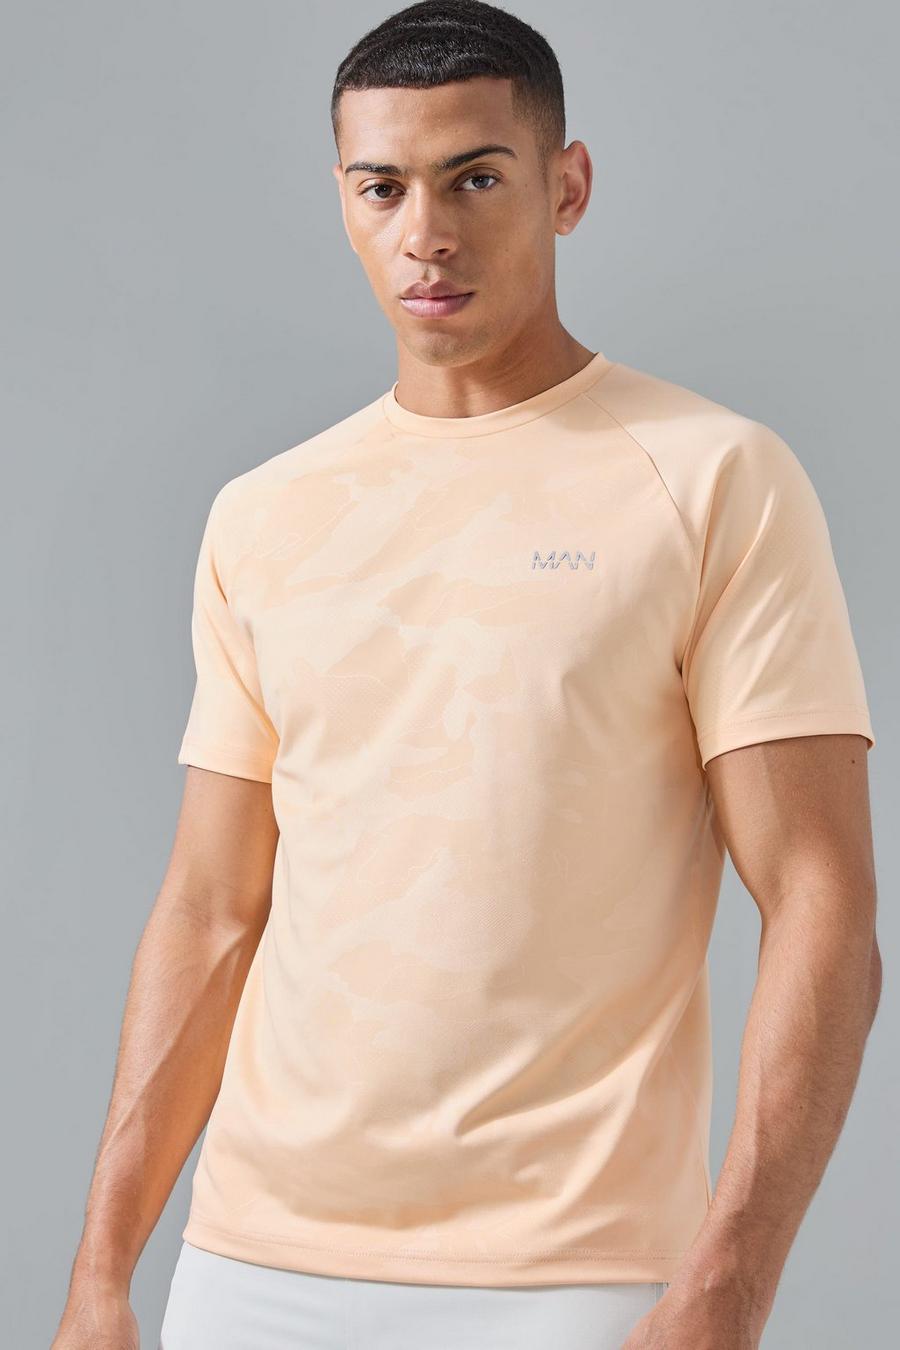 Man Active Camouflage Raglan Performance T-Shirt, Orange